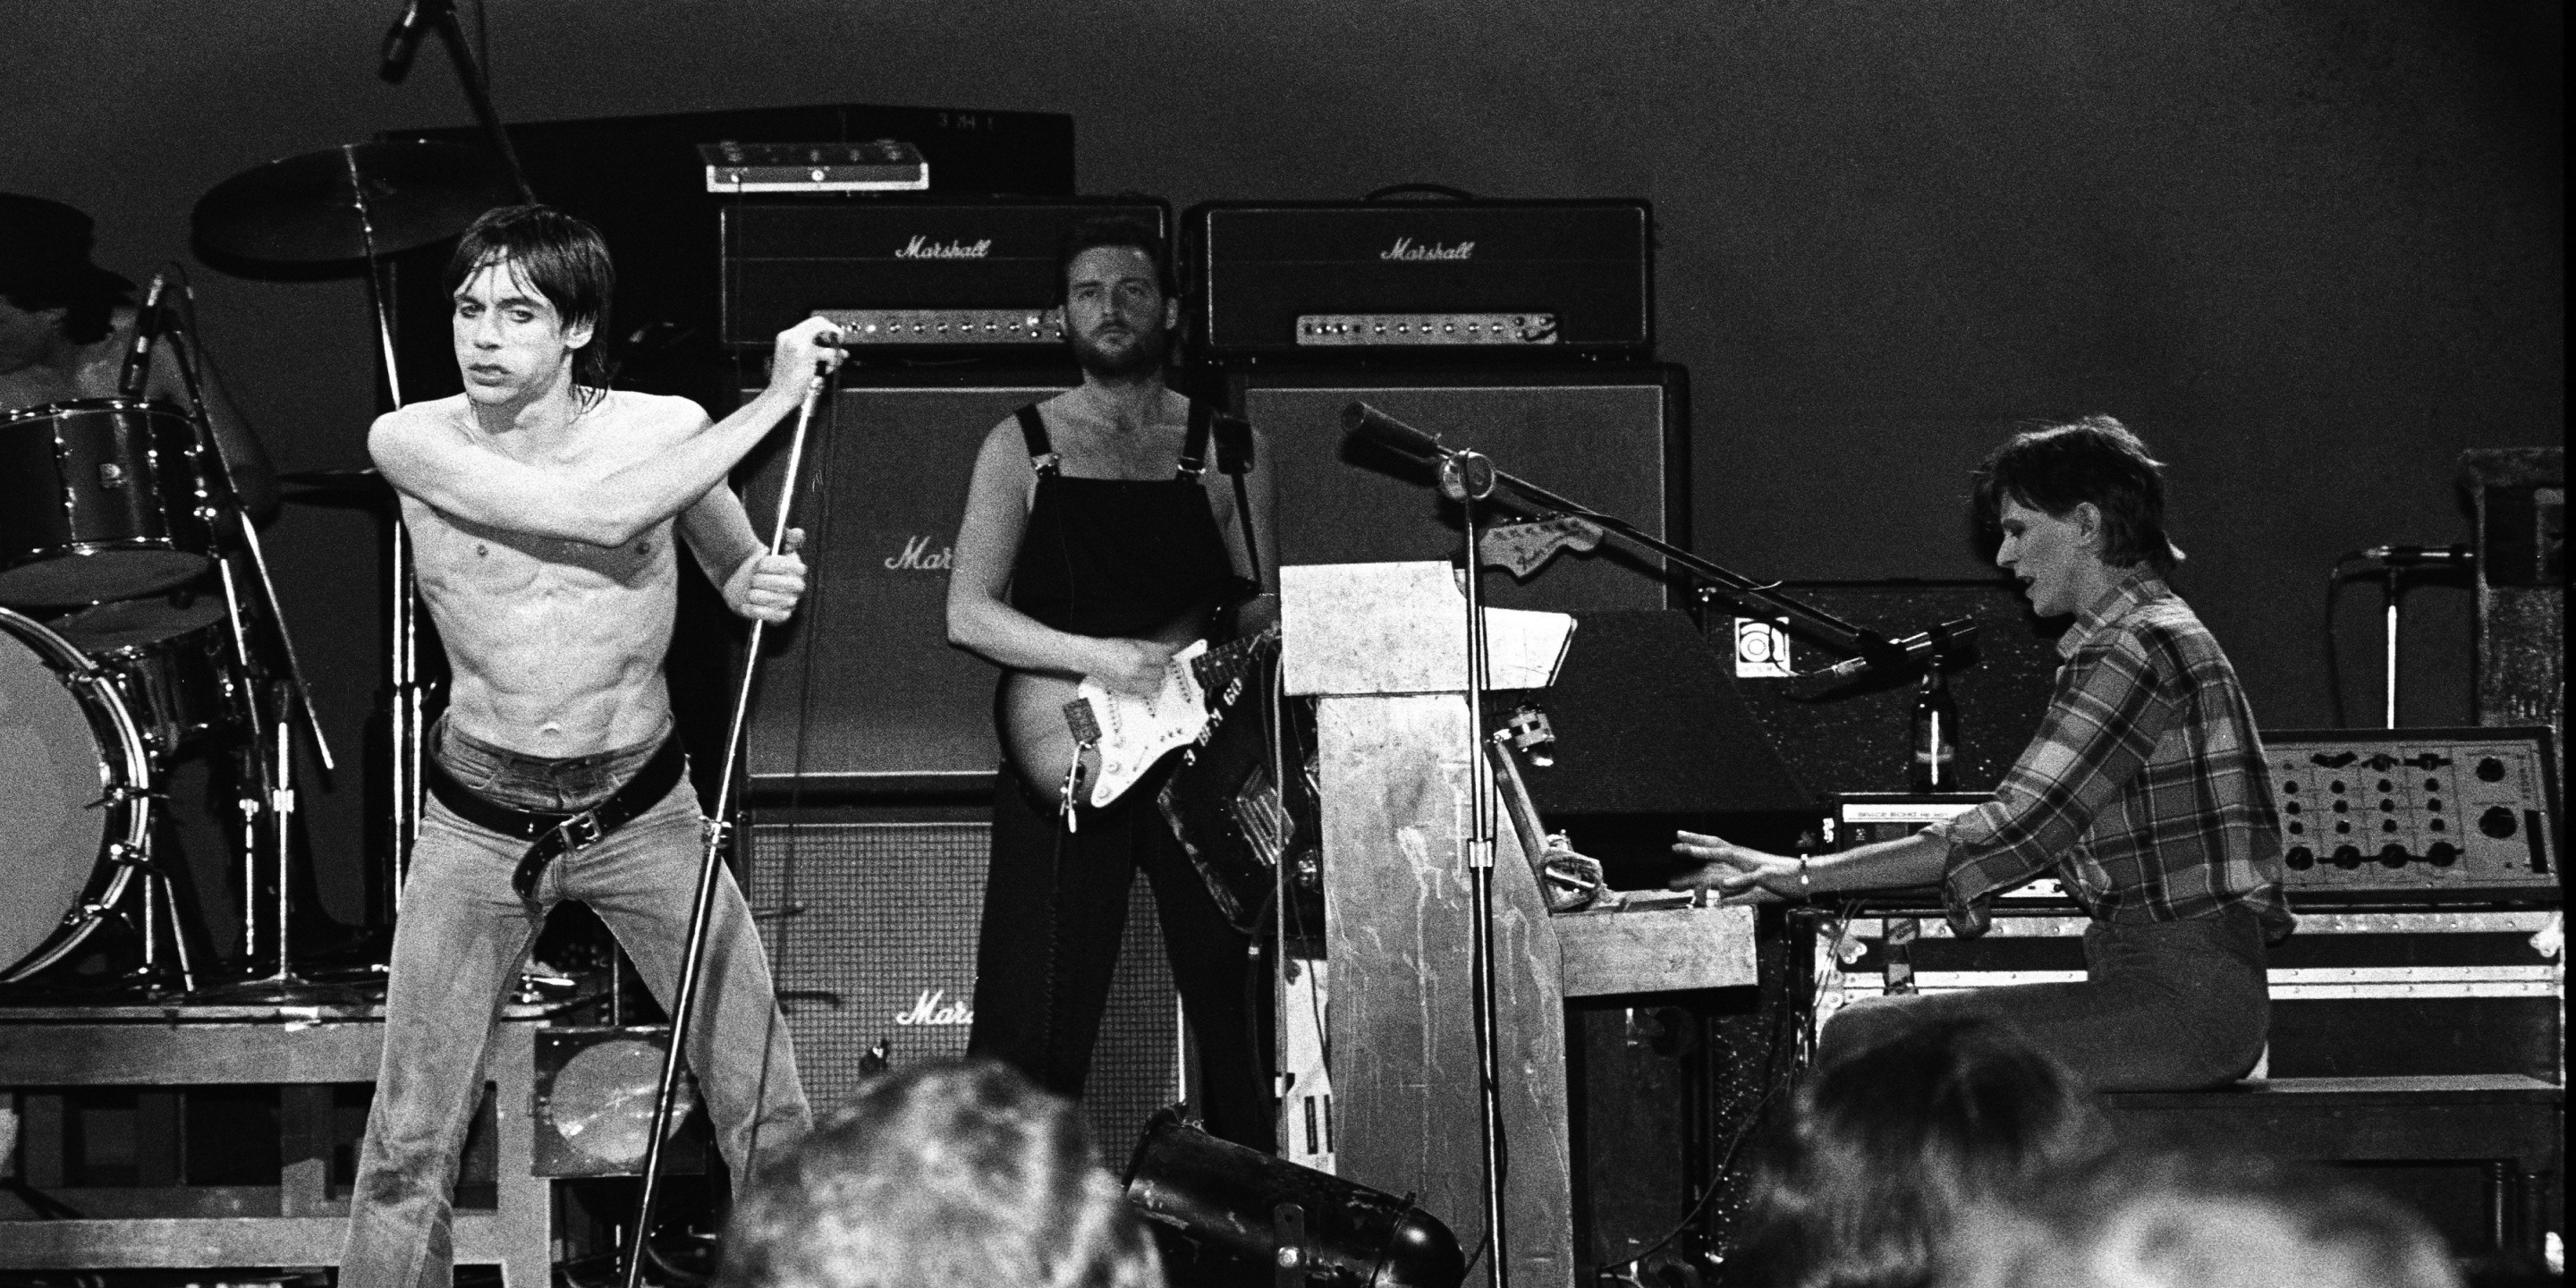 70년대 보위와 이기 팝이 마샬 앰프를 사용하며 연주하는 흑백 사진.